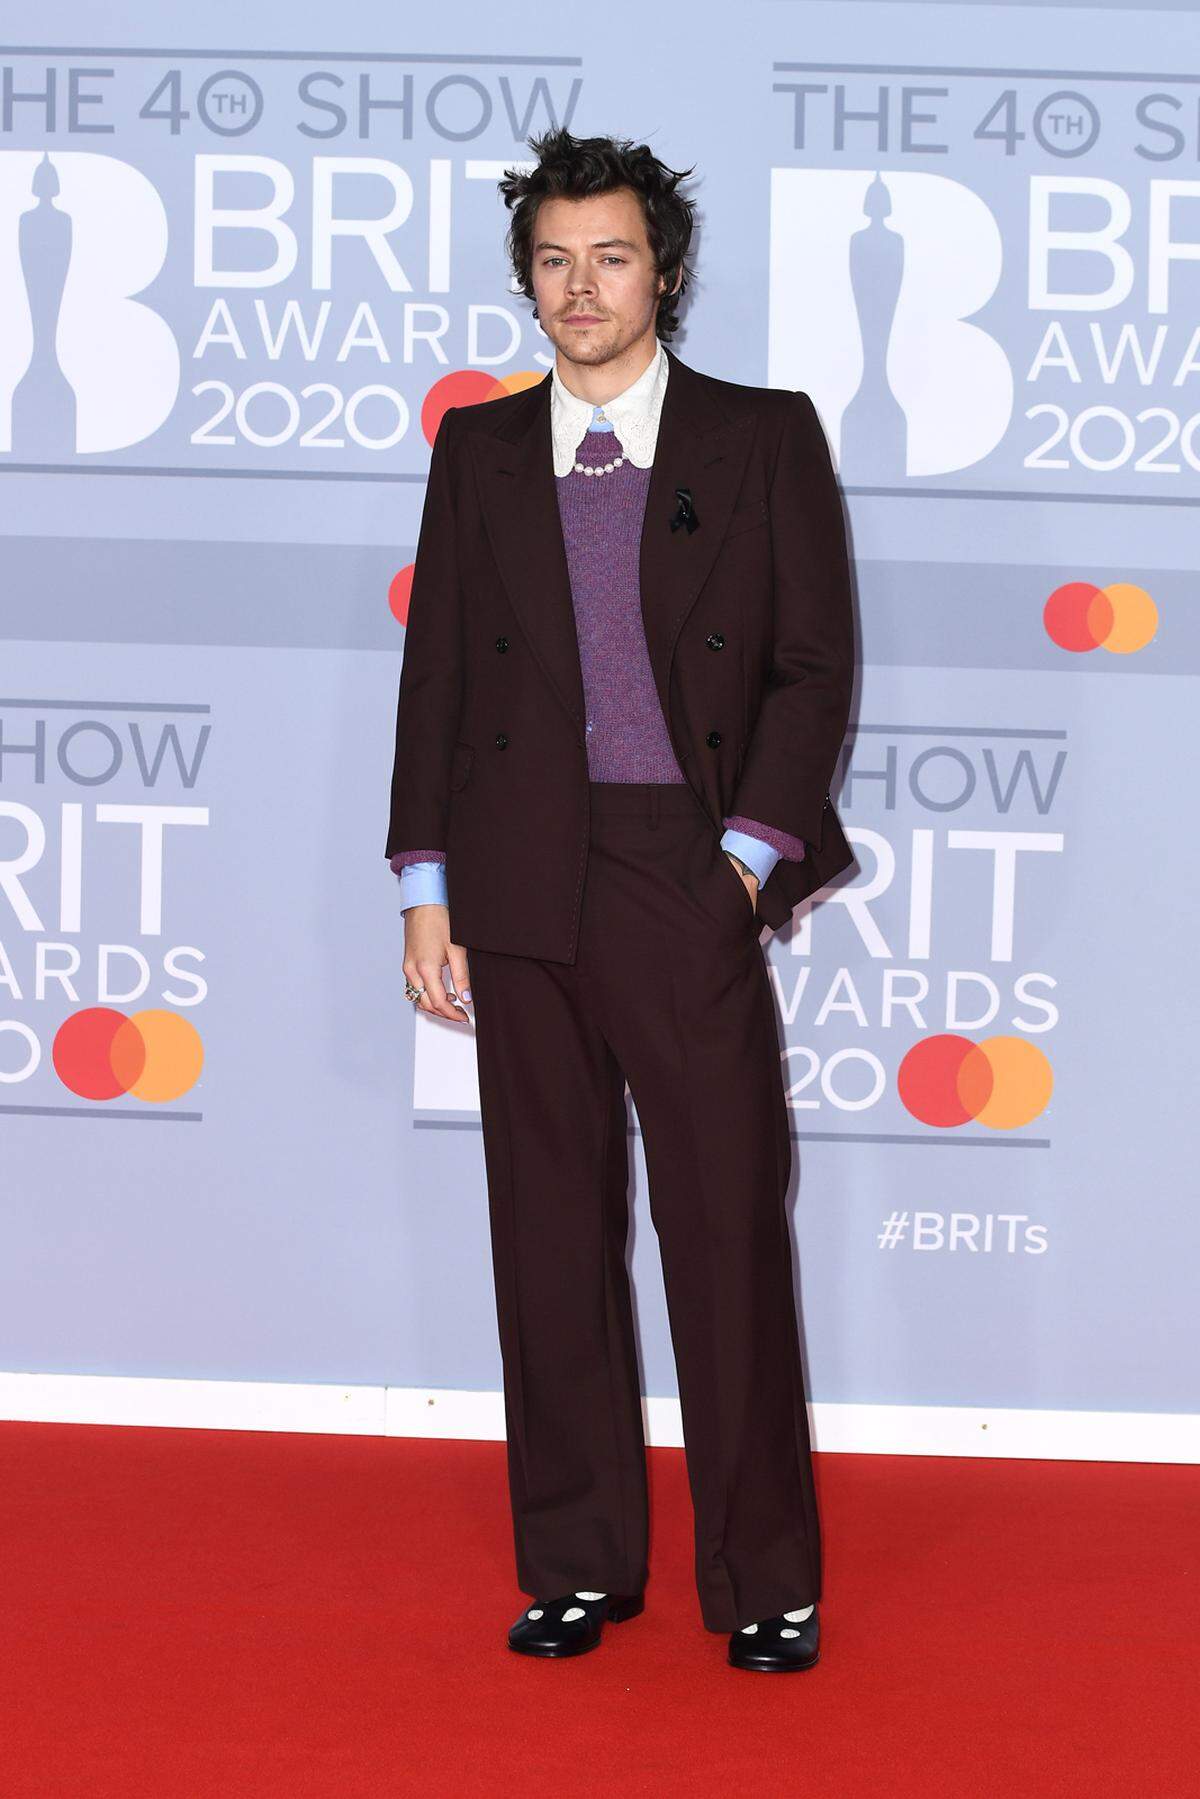 Platz 9 geht an Harry Styles, der mit seinen Looks immer wieder die Gender-Normen sprengt und etwa in einem Kleid auf dem Cover der "Vogue" zu sehen war.